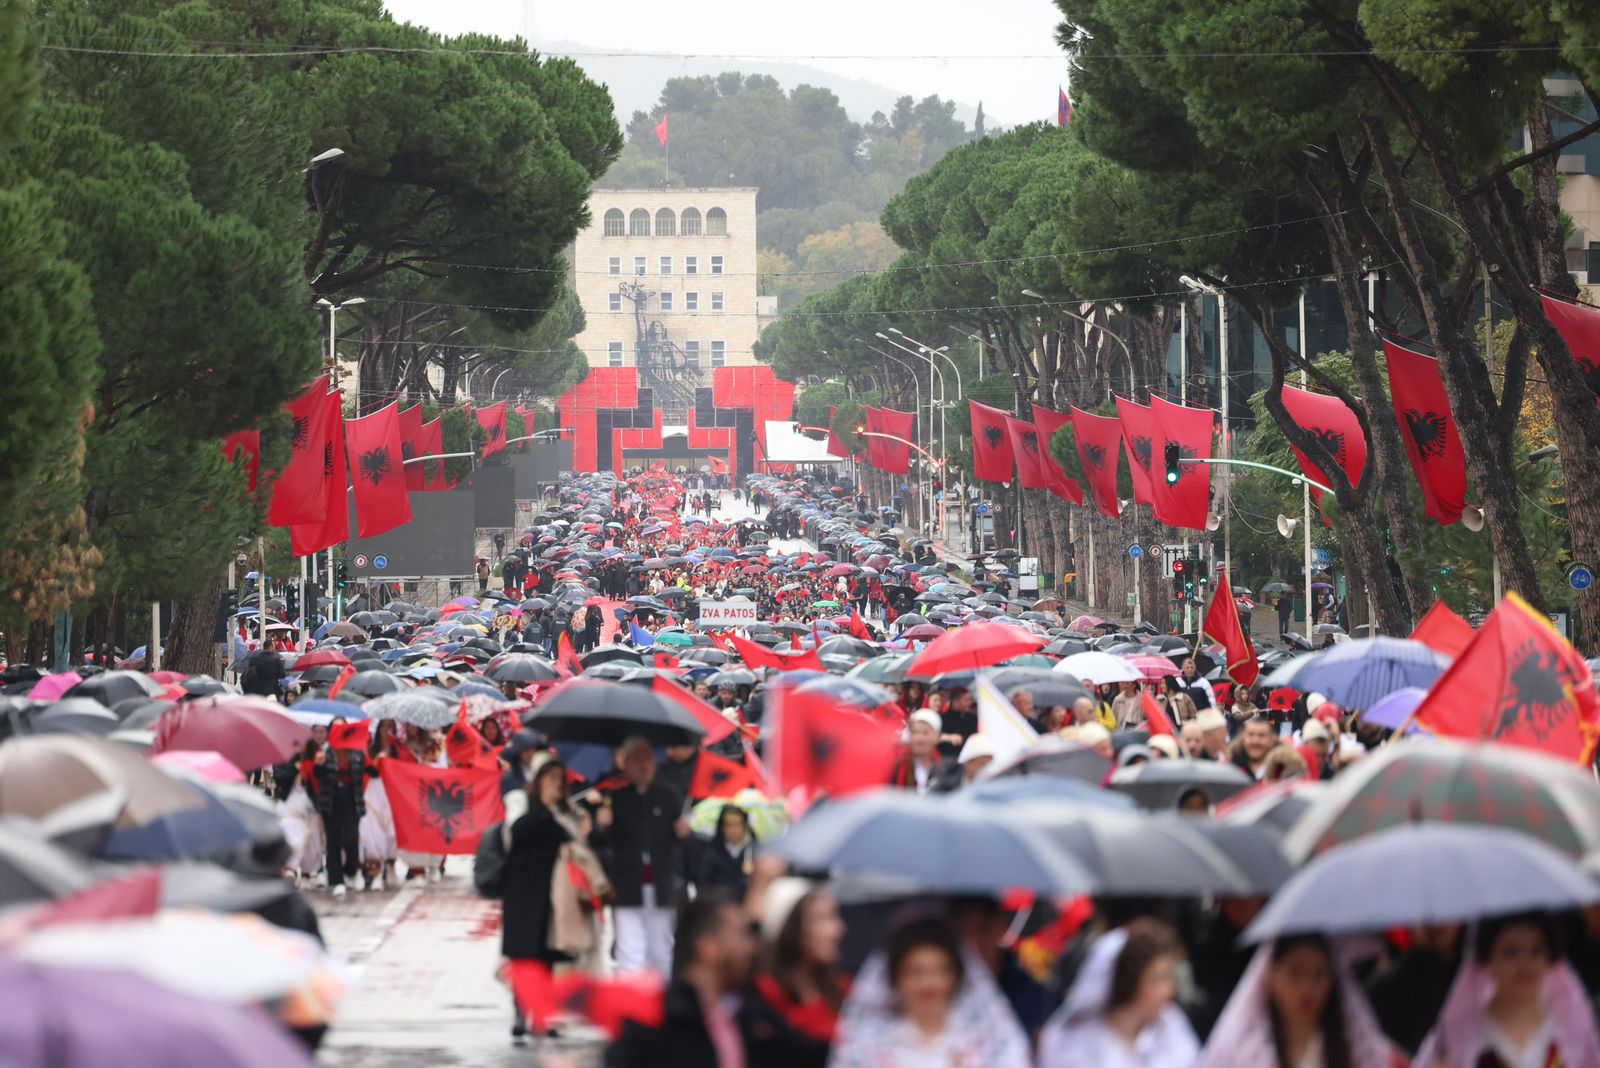  Mbahet “Parada e Shqiptarëve” në Tiranë me flamuj, motorë dhe simbole Kombëtare